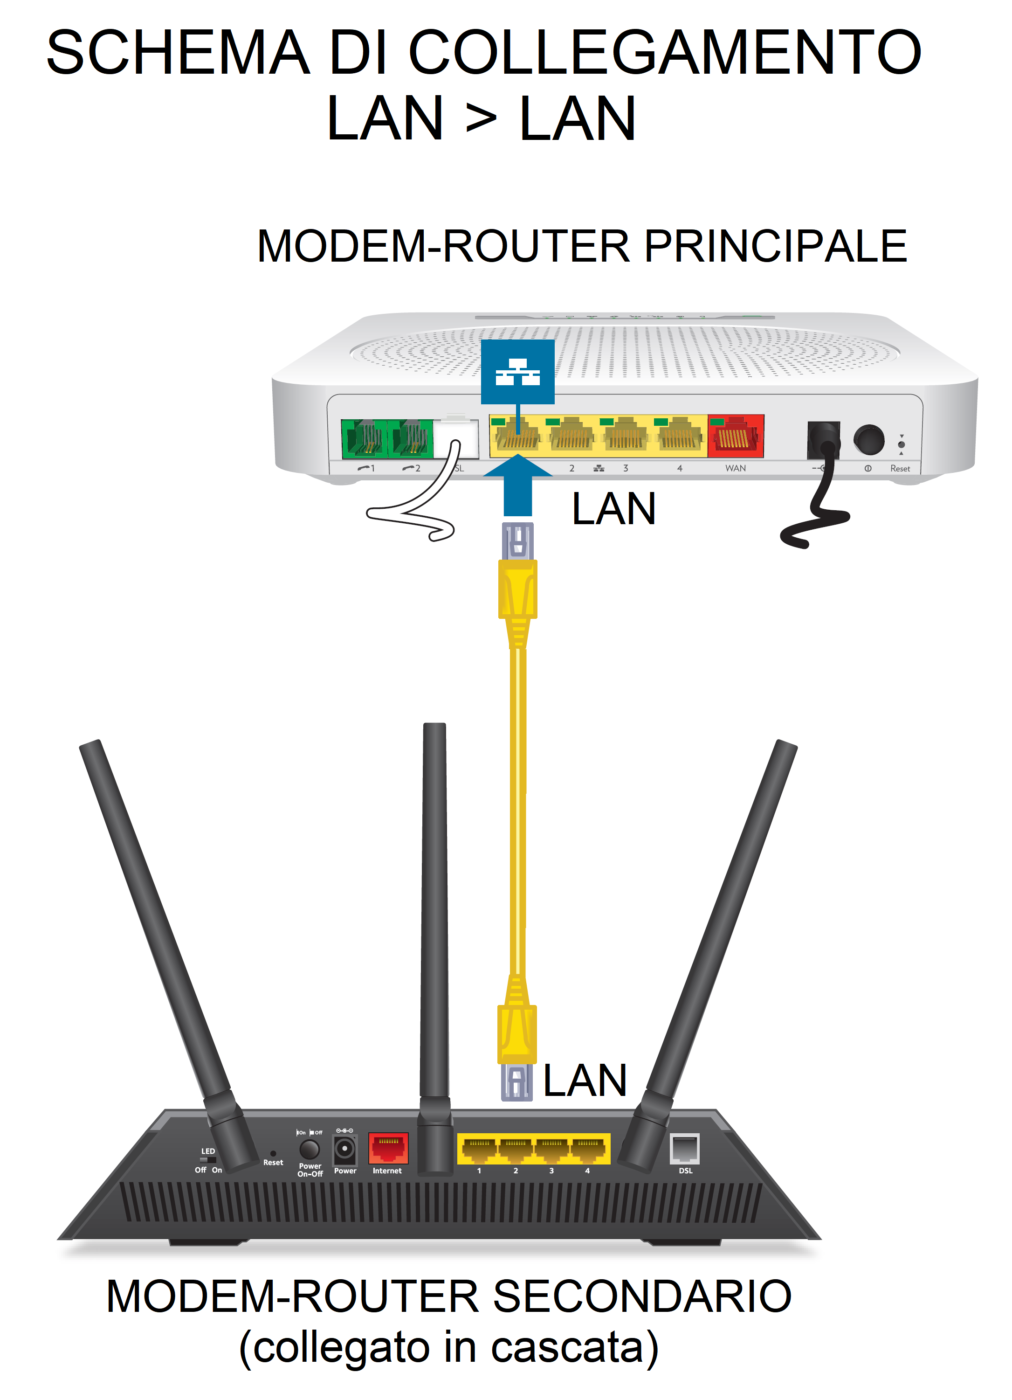 Schema di collegamento LAN-LAN tra modem e router